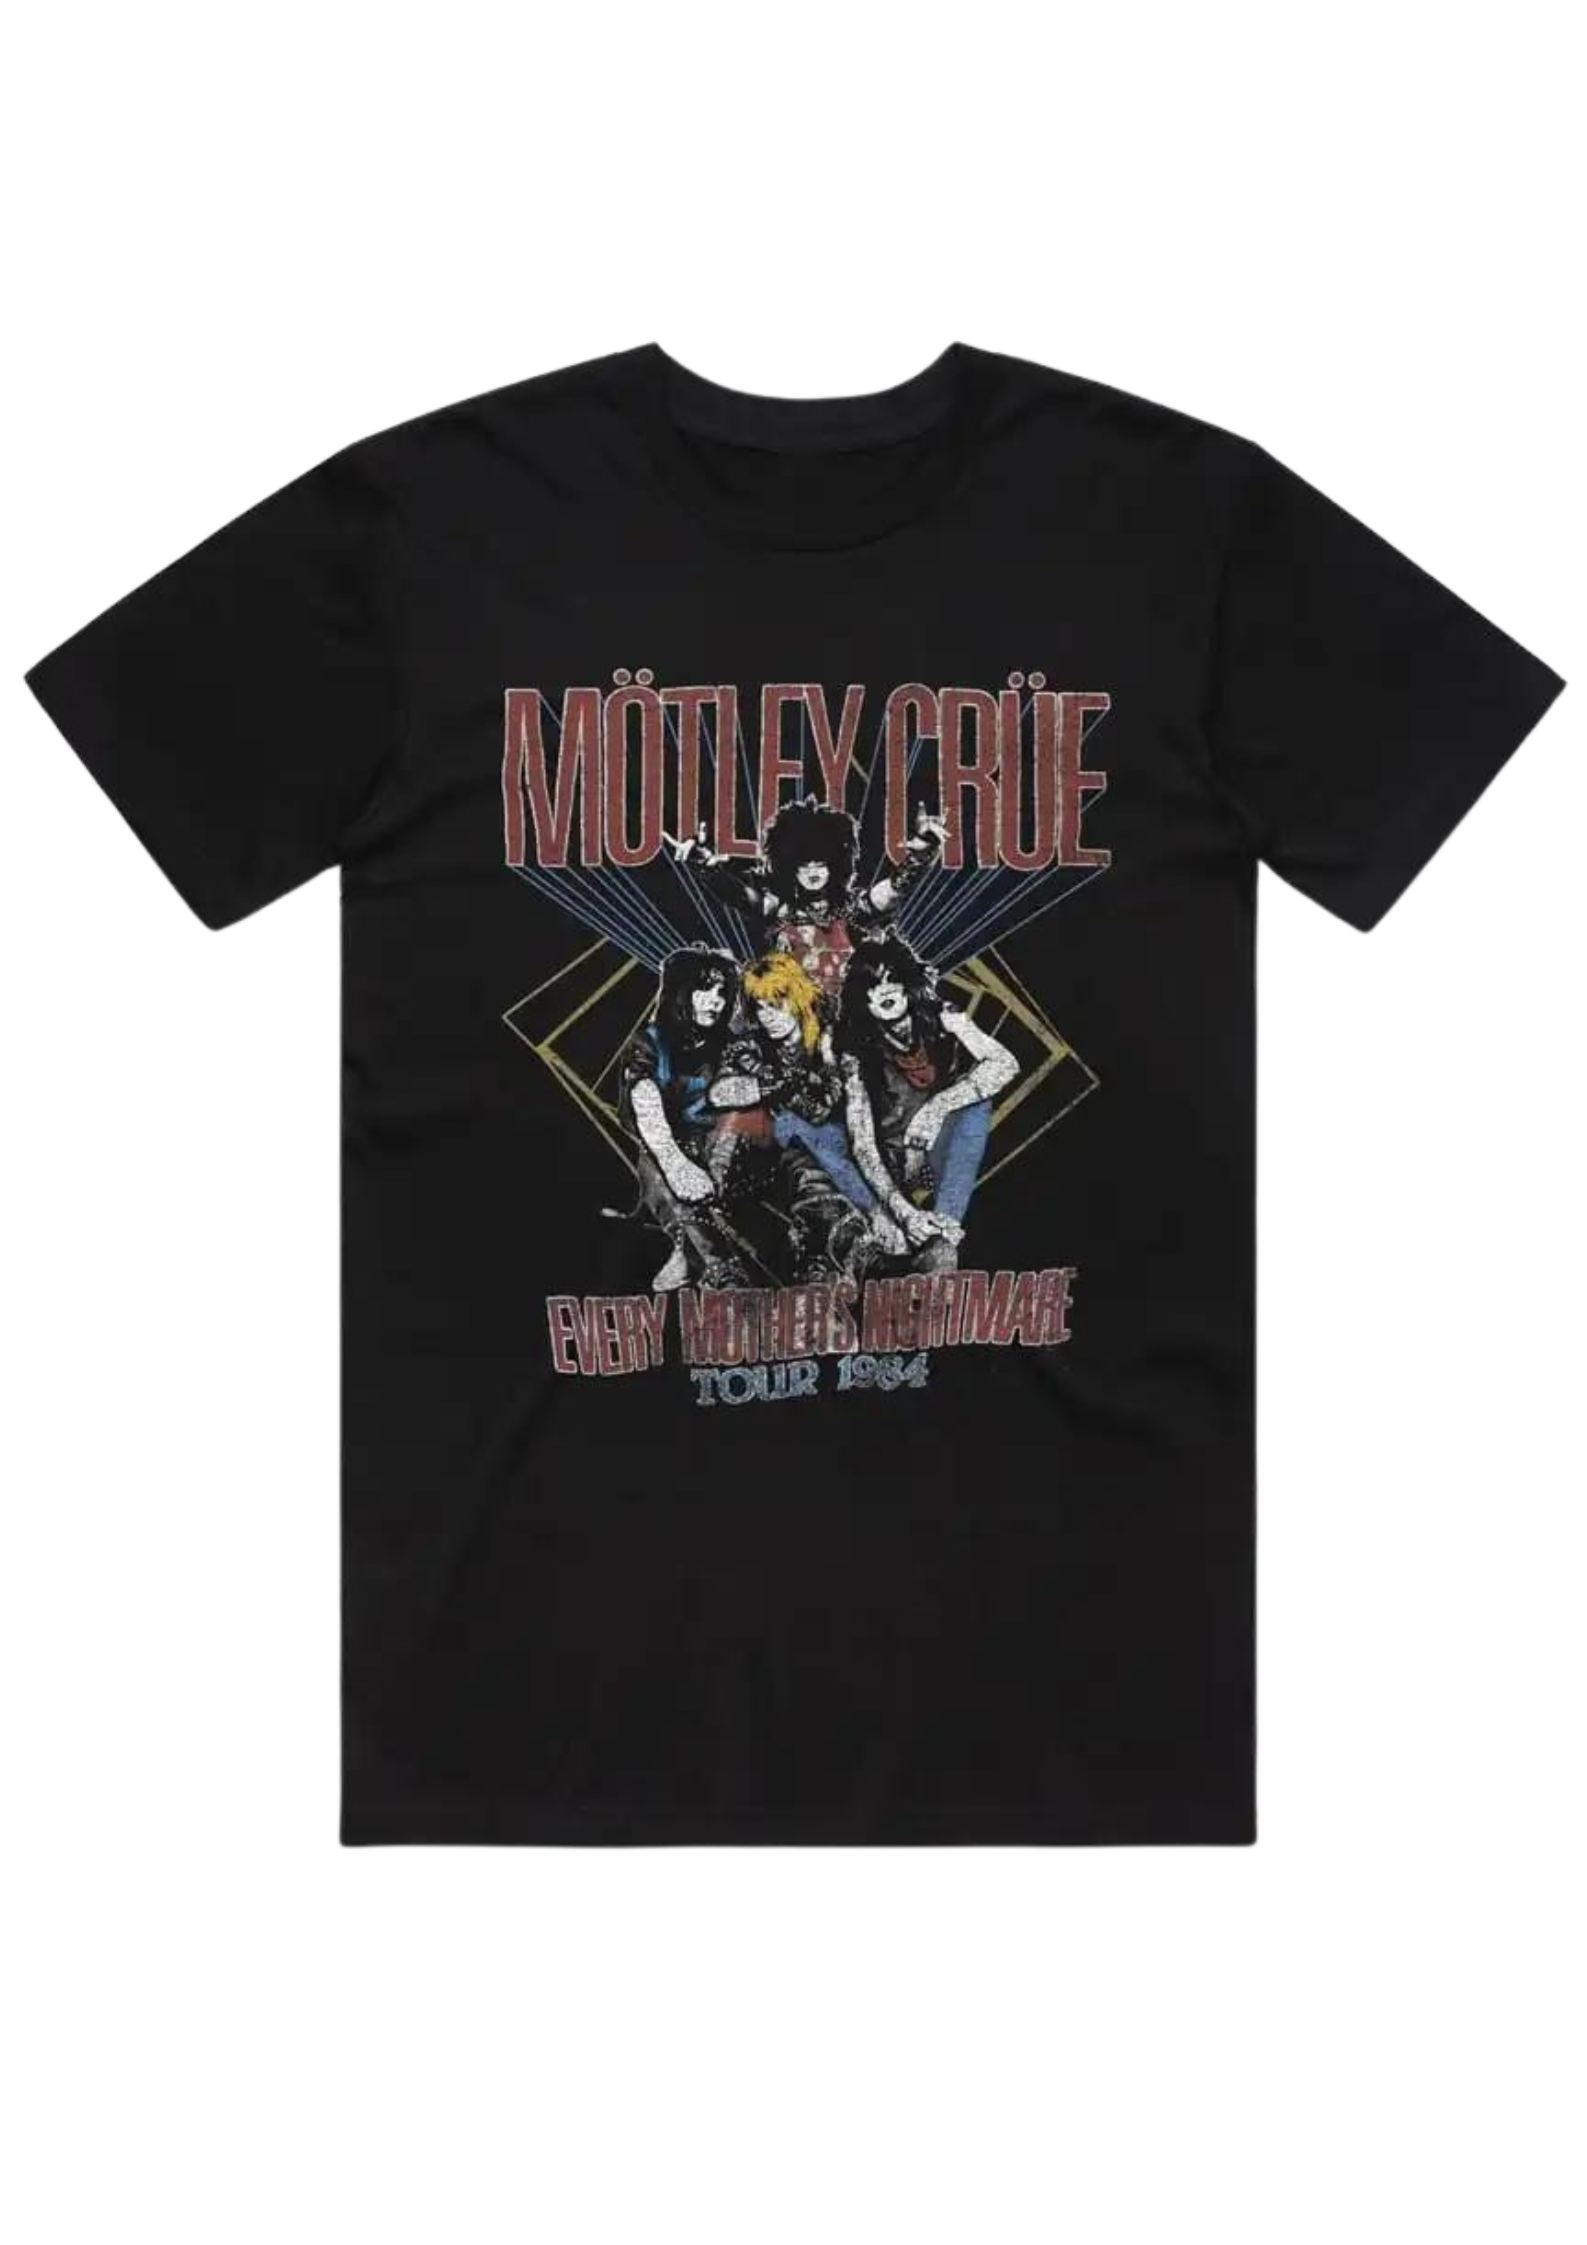 Motley Crue 'Mother's Nightmare' t-shirt - Hot Metal